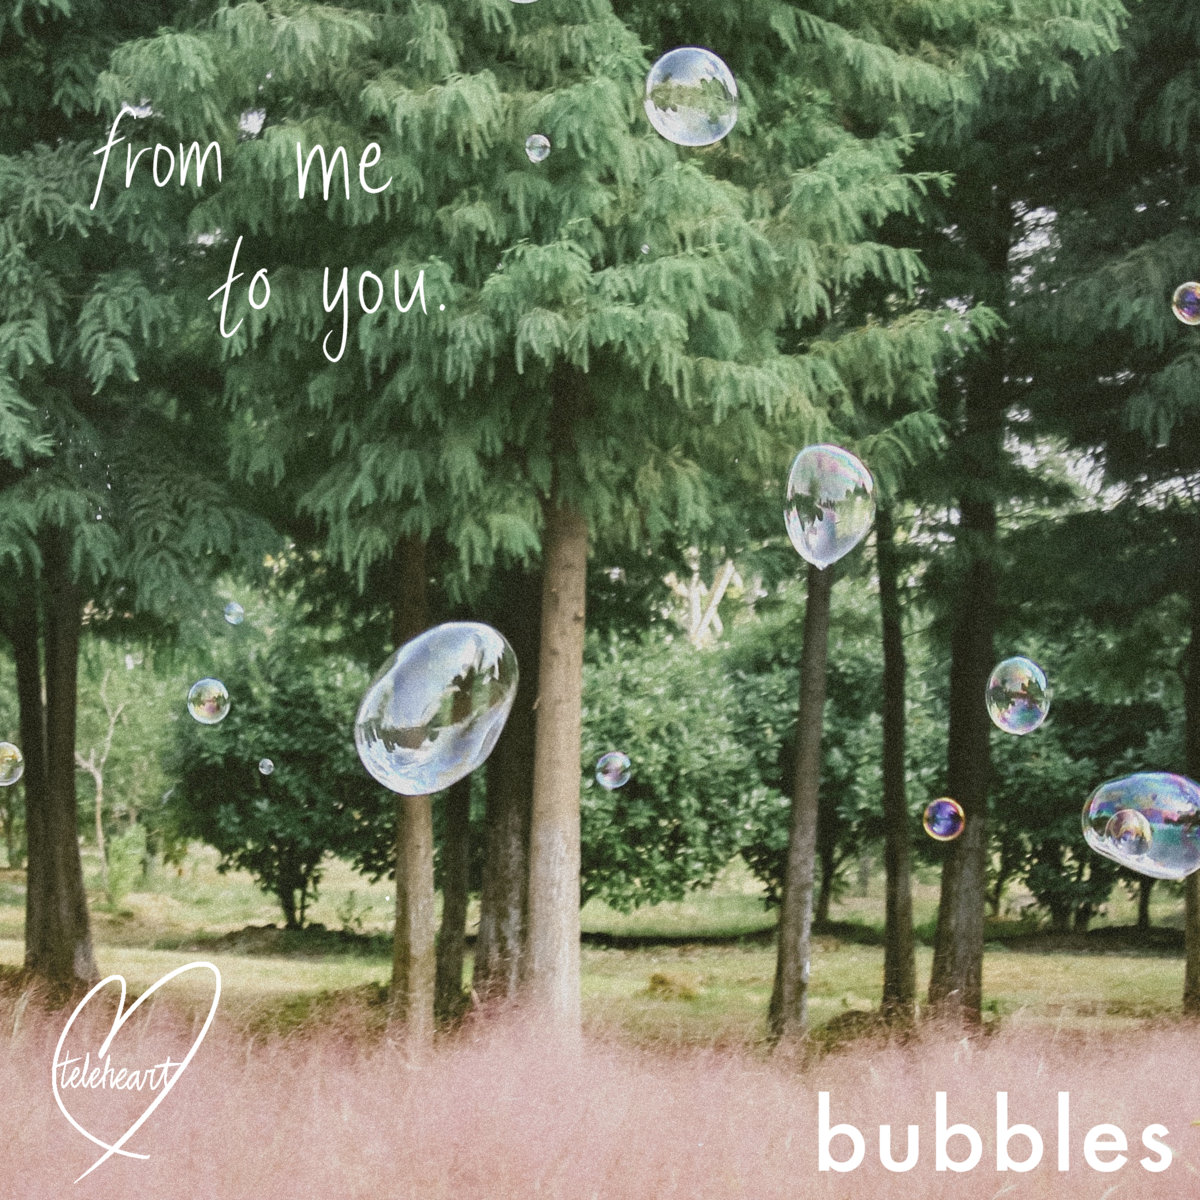 EP REVIEW: Teleheart – Bubbles